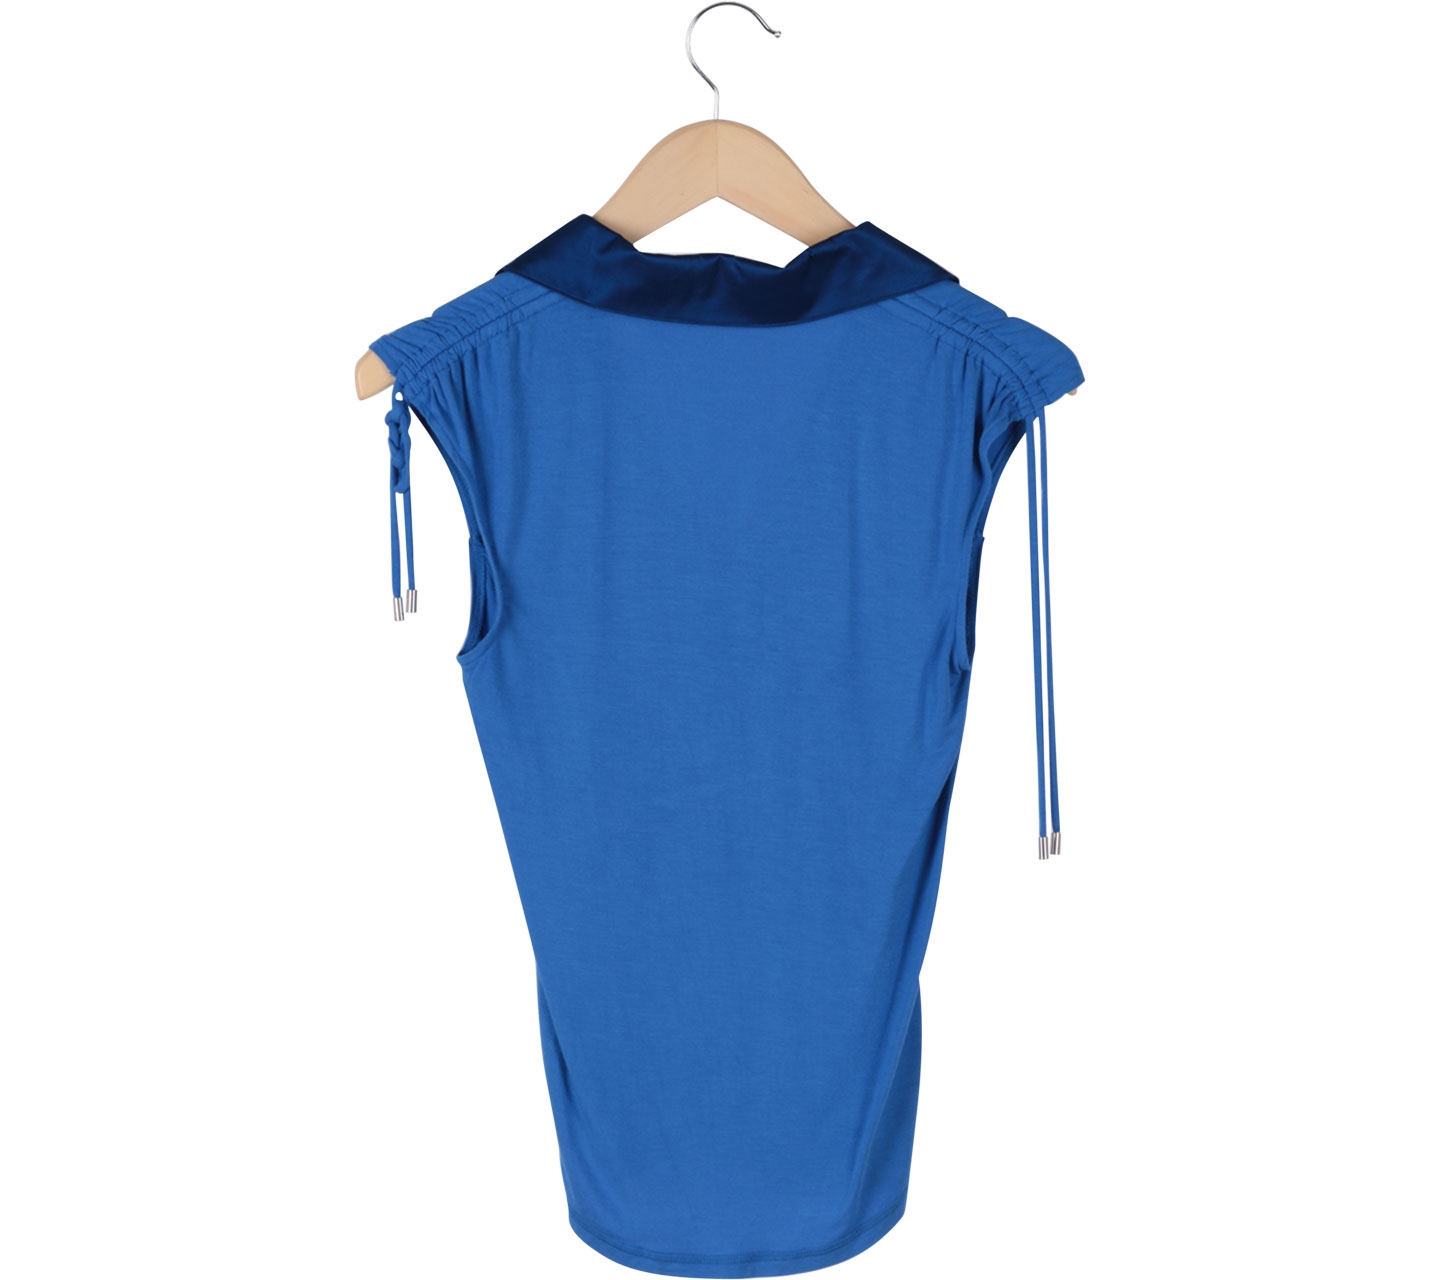 Karen Millen Blue Sleeveless Shirt